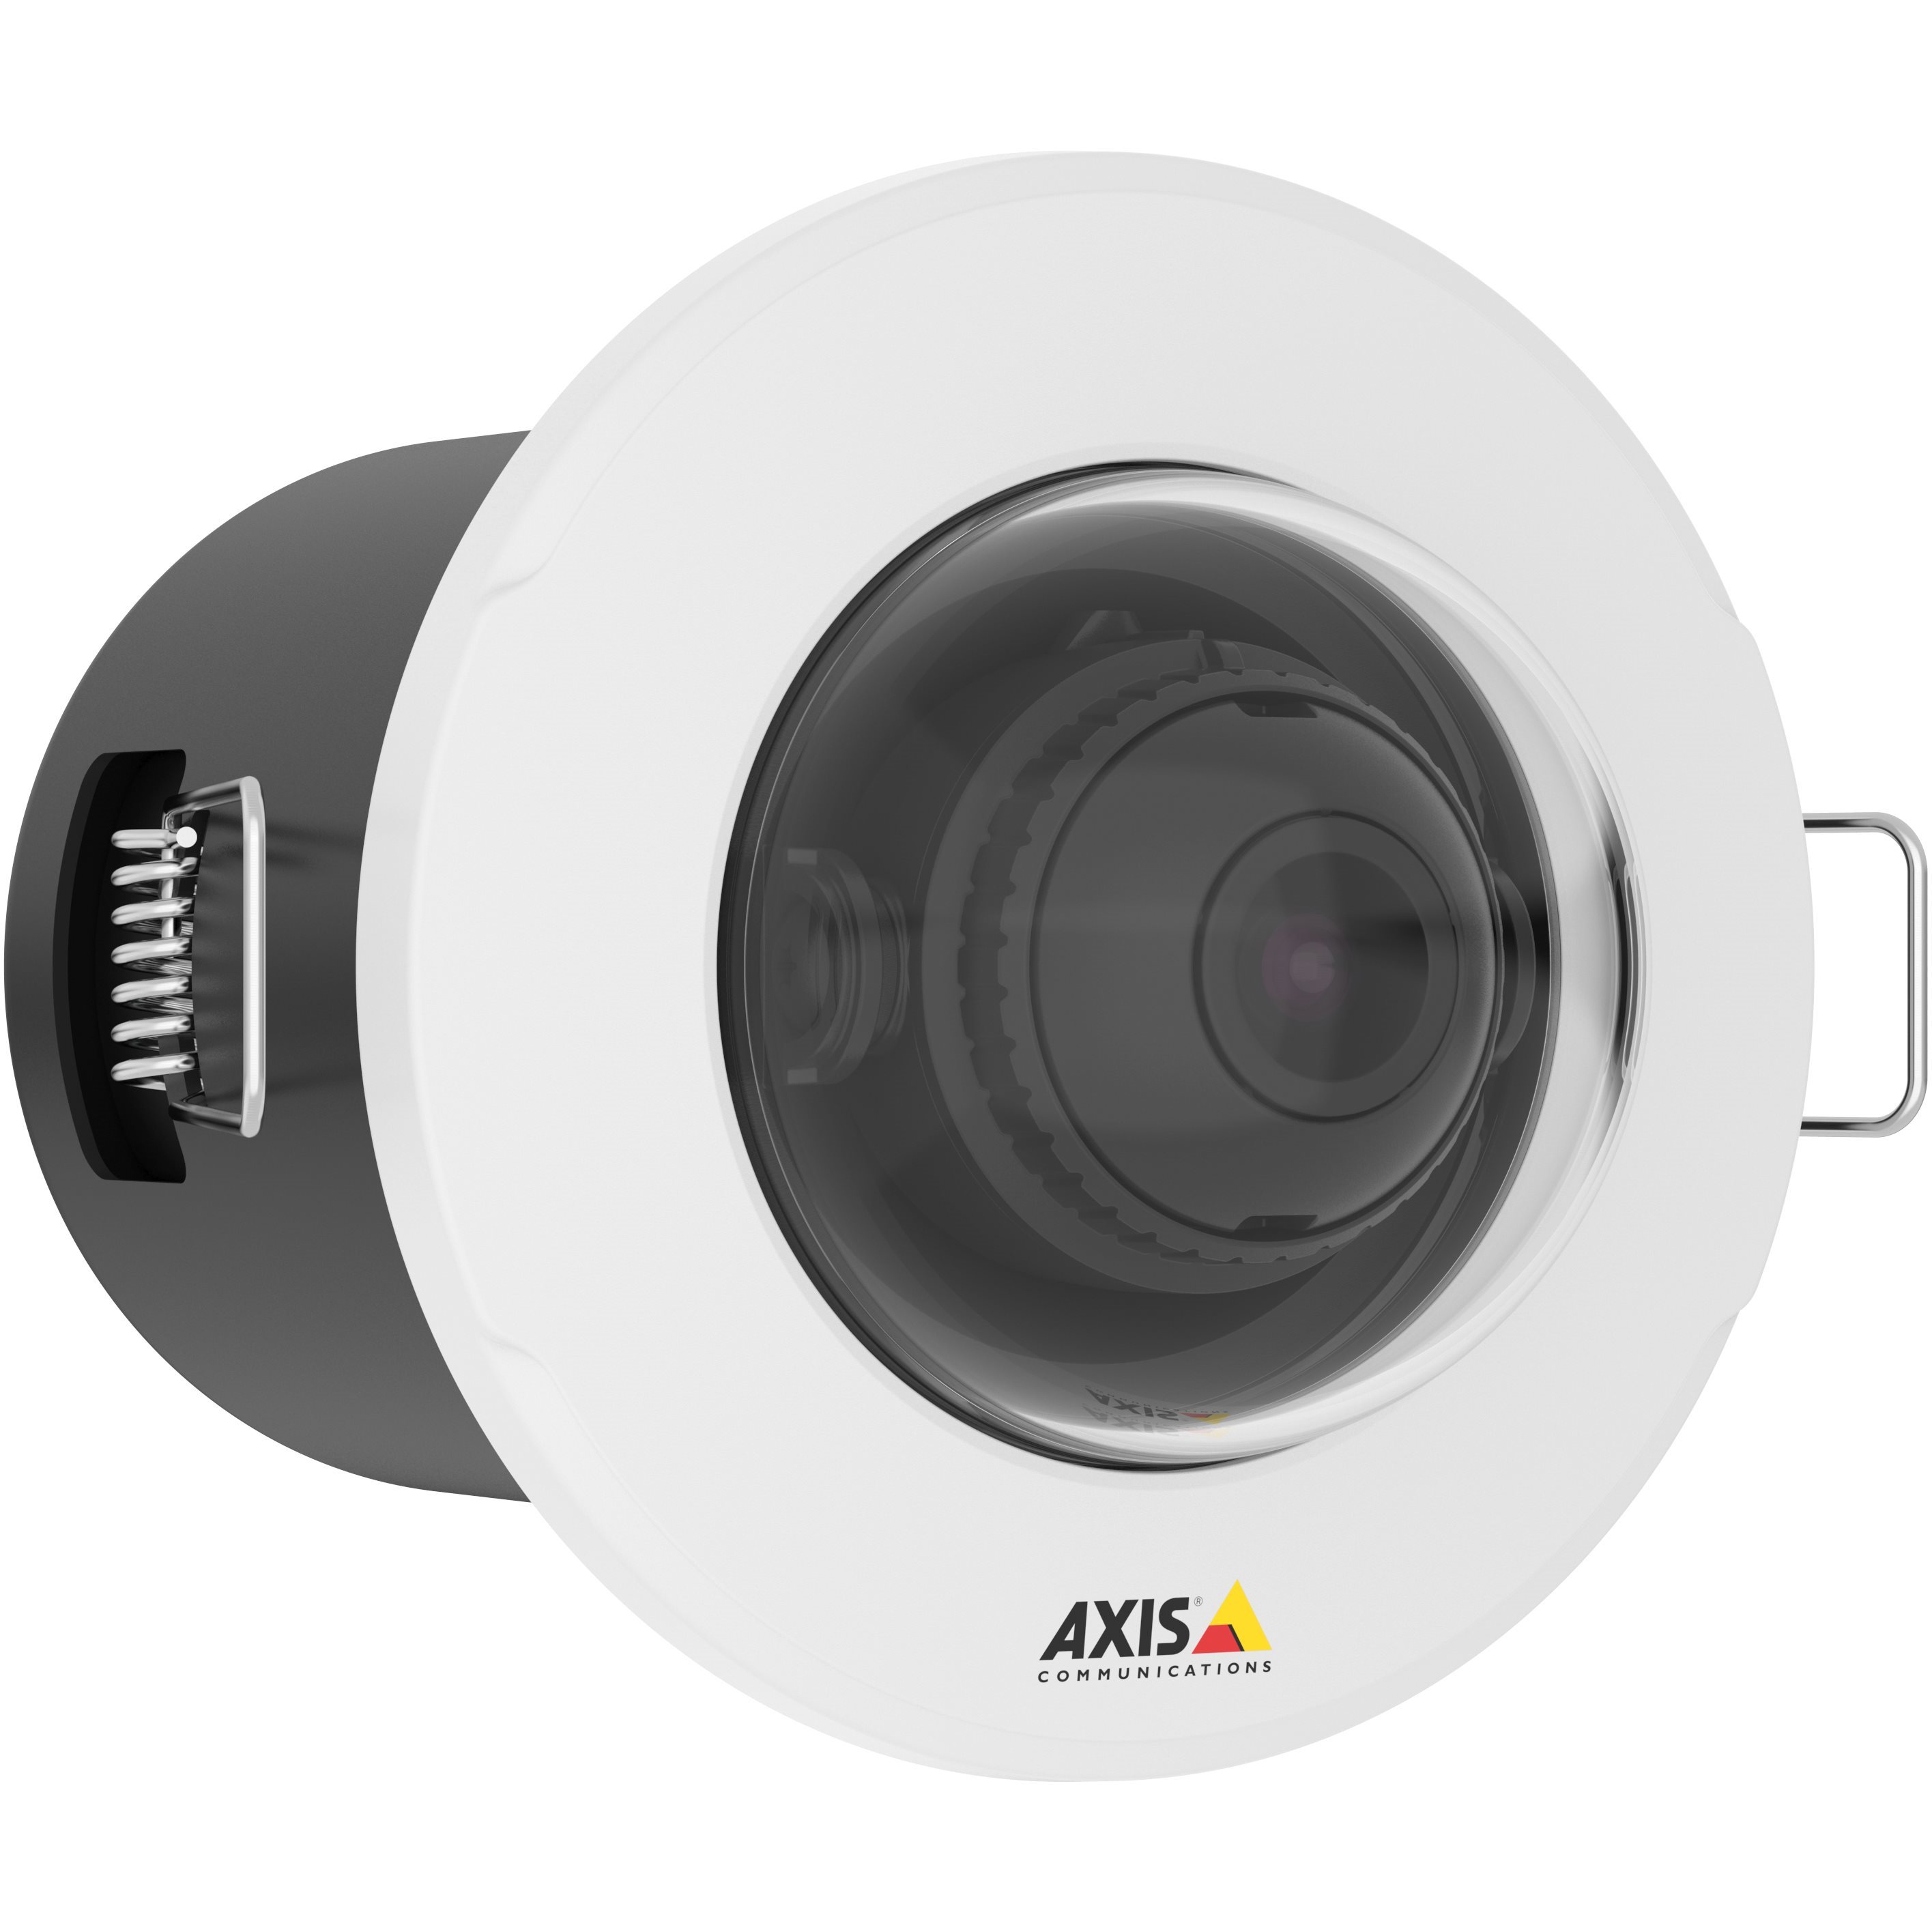  Caméras IP Caméra mini dôme M3015 01151-001